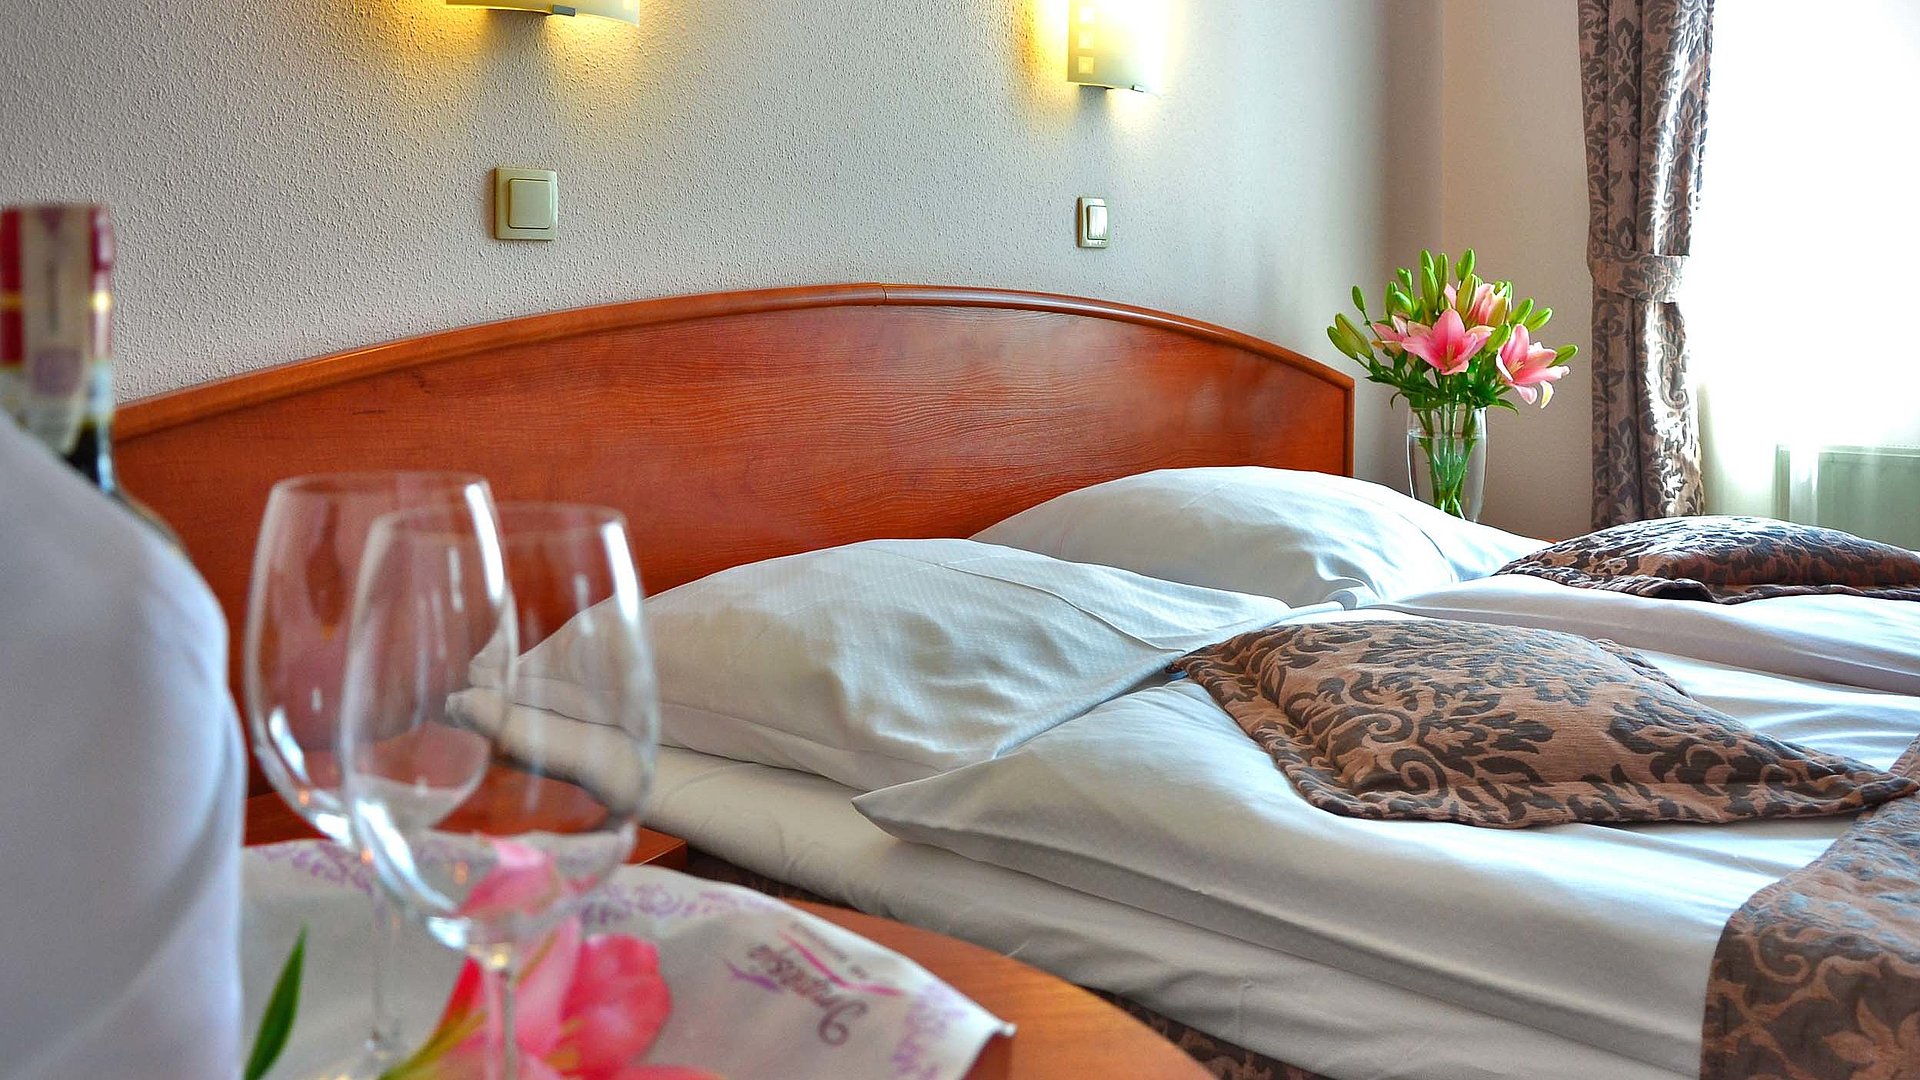 Pauschalangebote für eine Woche in Mittelfranken - im Hotelzimmer von Gardinen durchleuchtet; Weingläser auf Tisch und Blumenstrauß auf Nachttisch